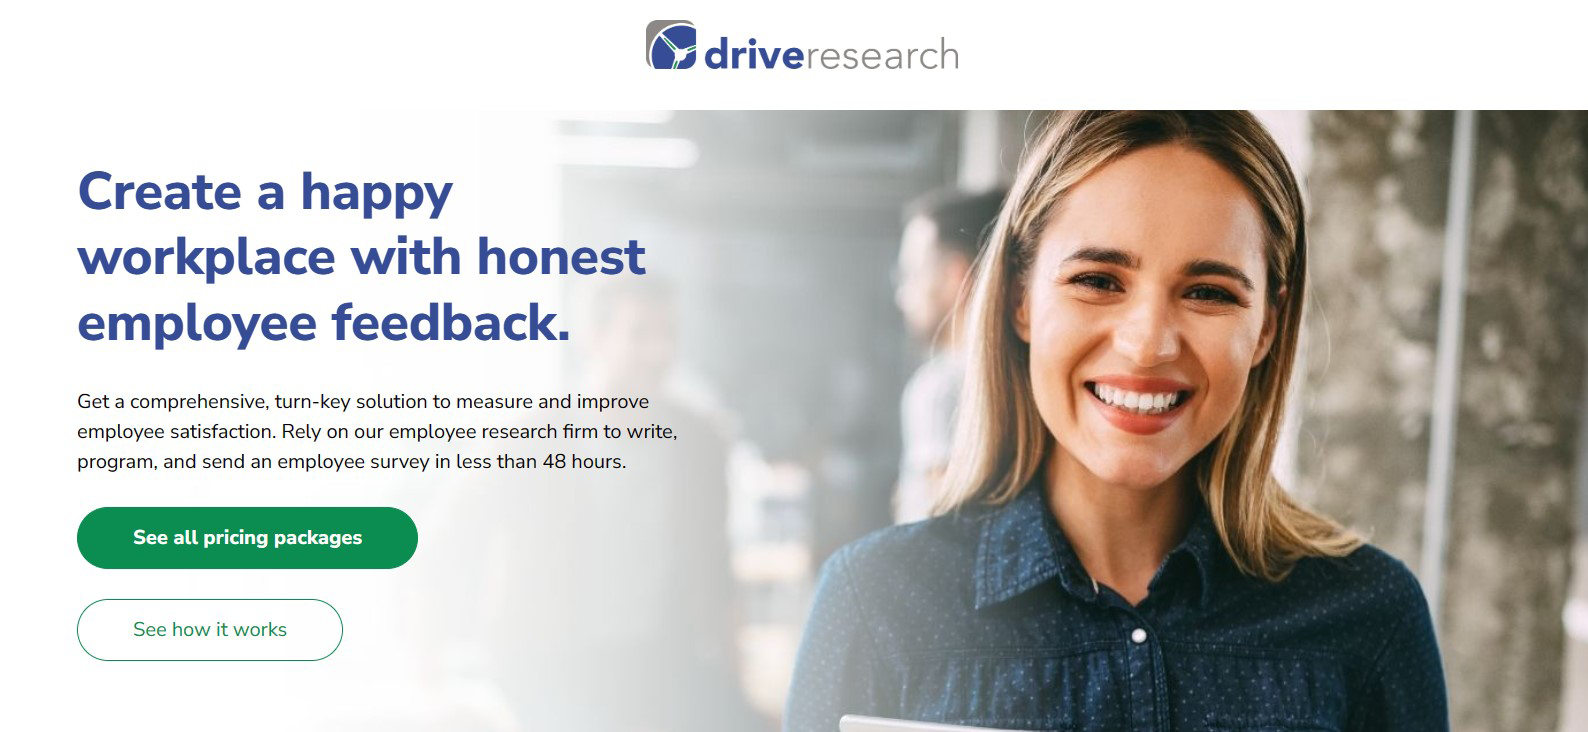 Drive Research employee survey platform